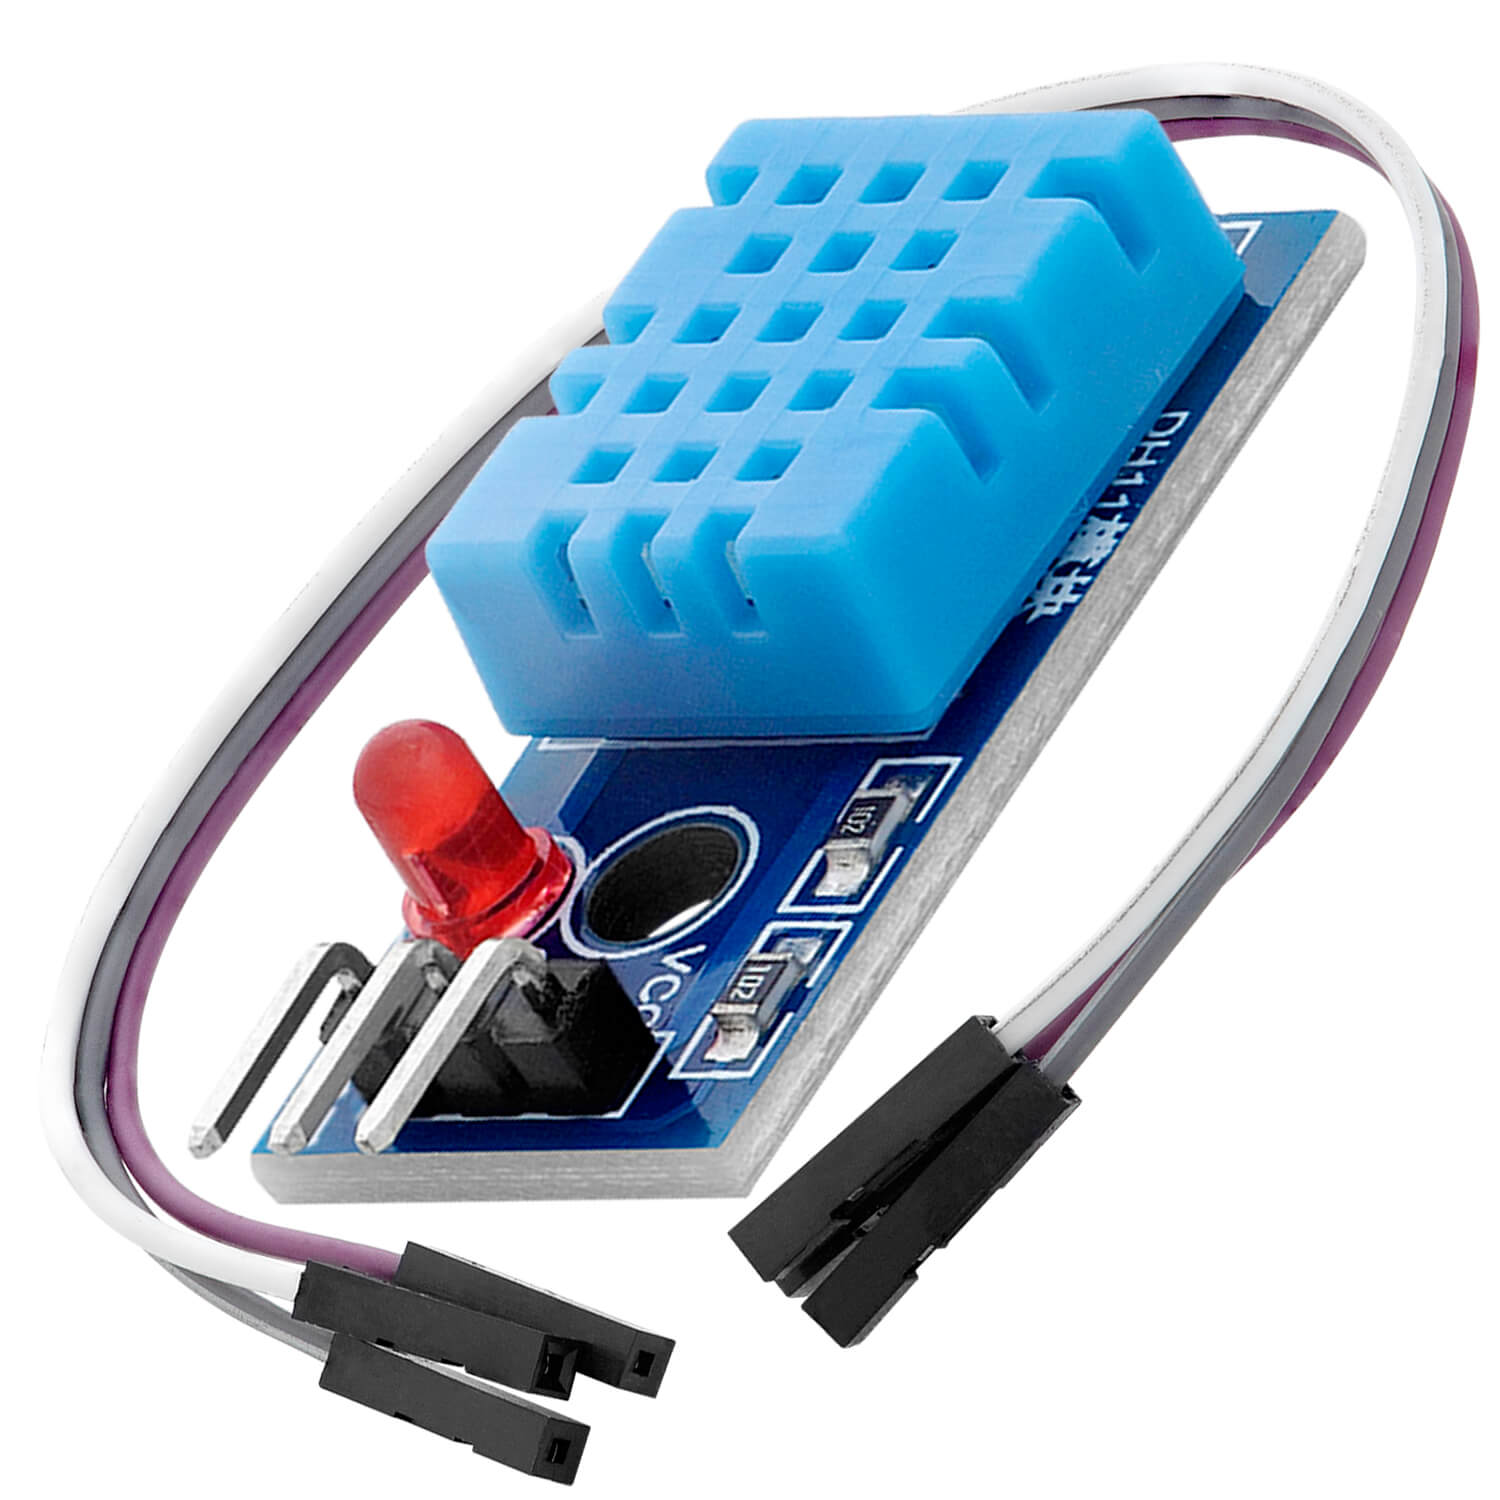 Sensor De Temperatura Y Humedad Dht11 Arduino